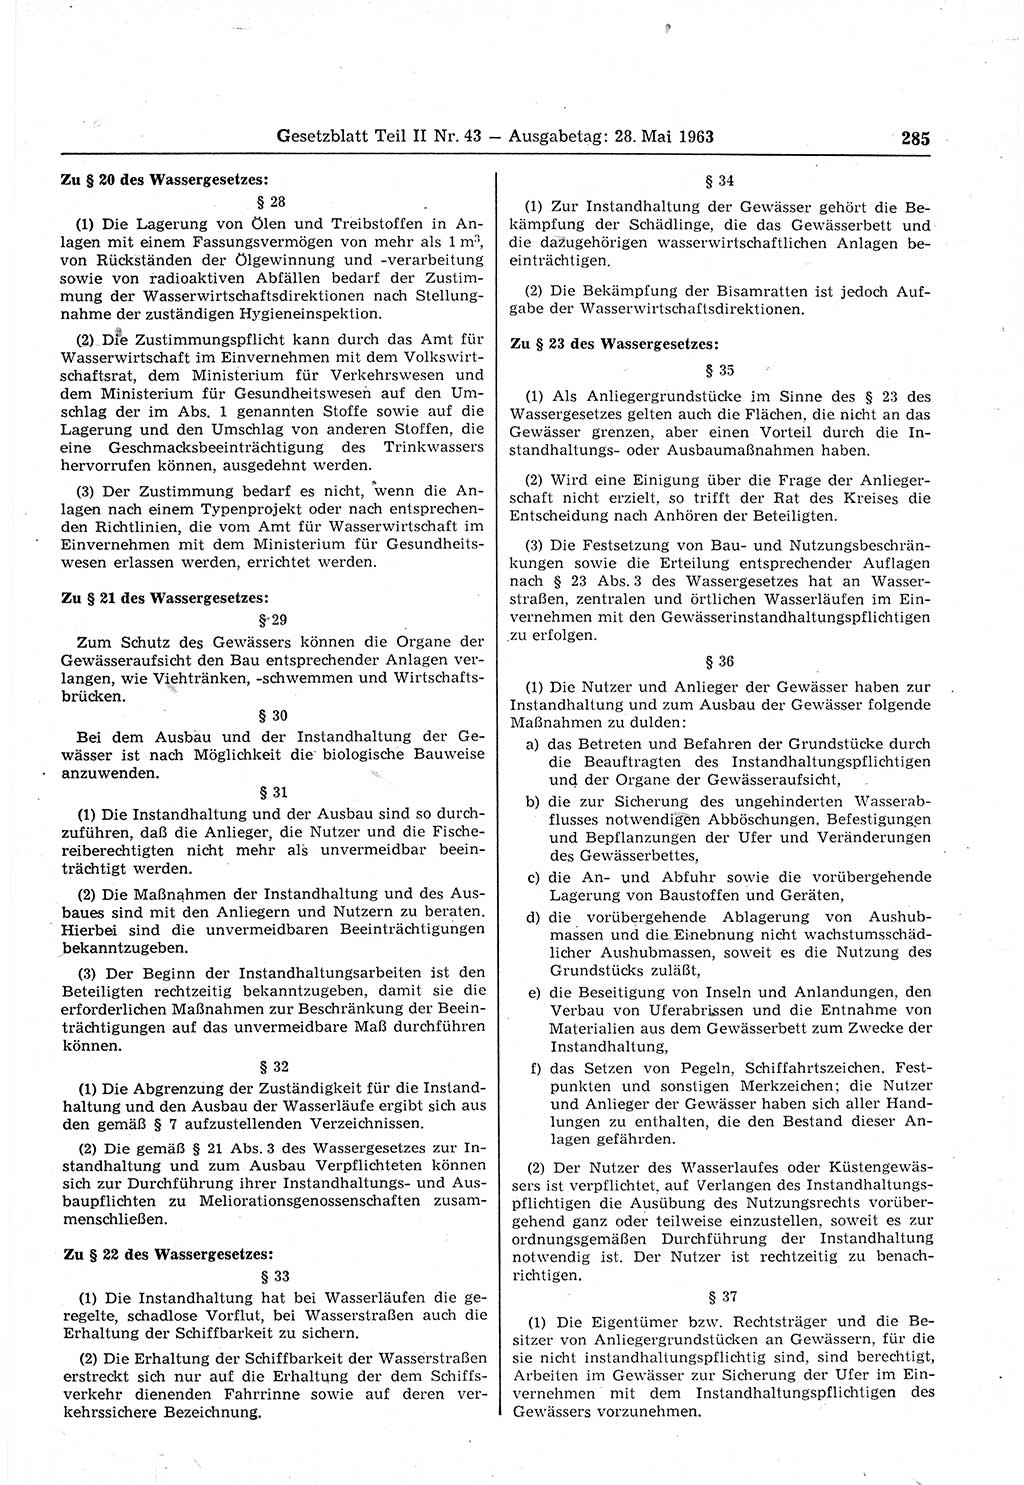 Gesetzblatt (GBl.) der Deutschen Demokratischen Republik (DDR) Teil ⅠⅠ 1963, Seite 285 (GBl. DDR ⅠⅠ 1963, S. 285)